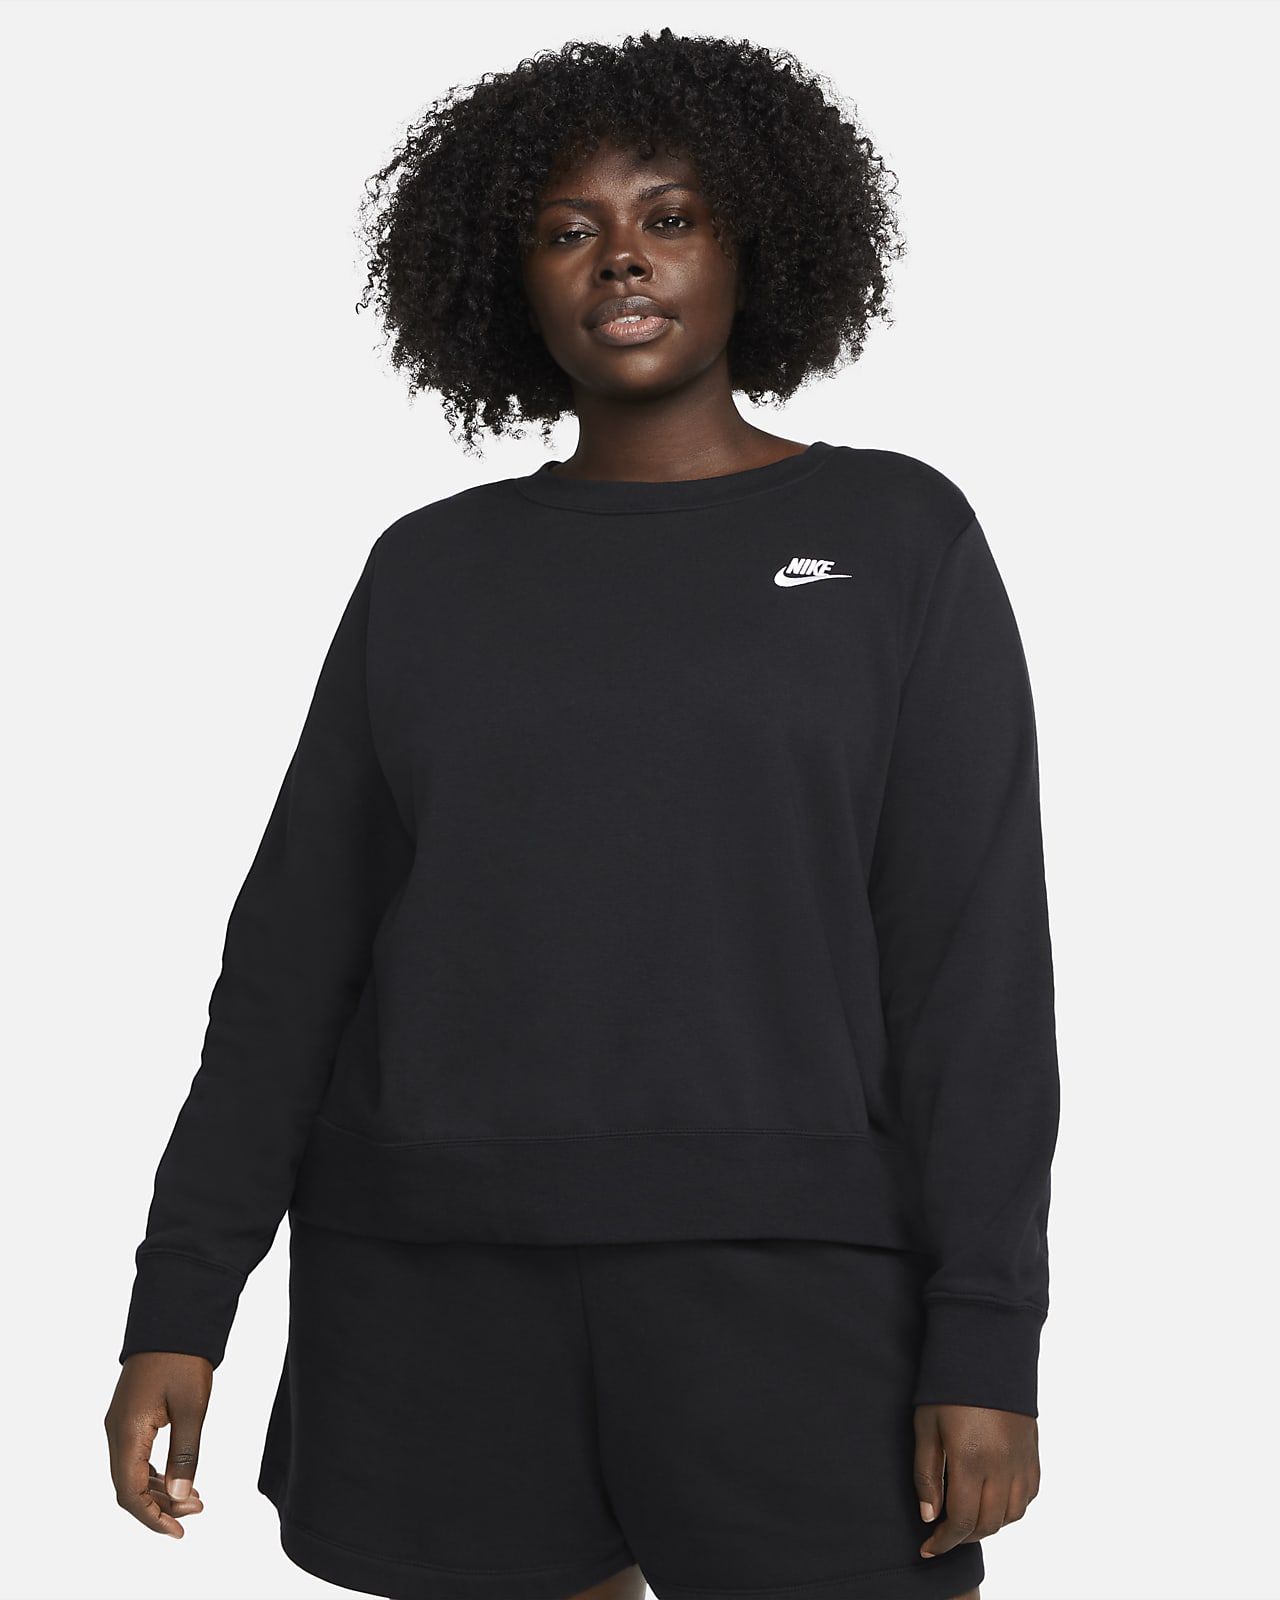 Nike Sportswear Club Fleece Sıfır Yaka Kadın Sweatshirt'ü (Büyük Beden)